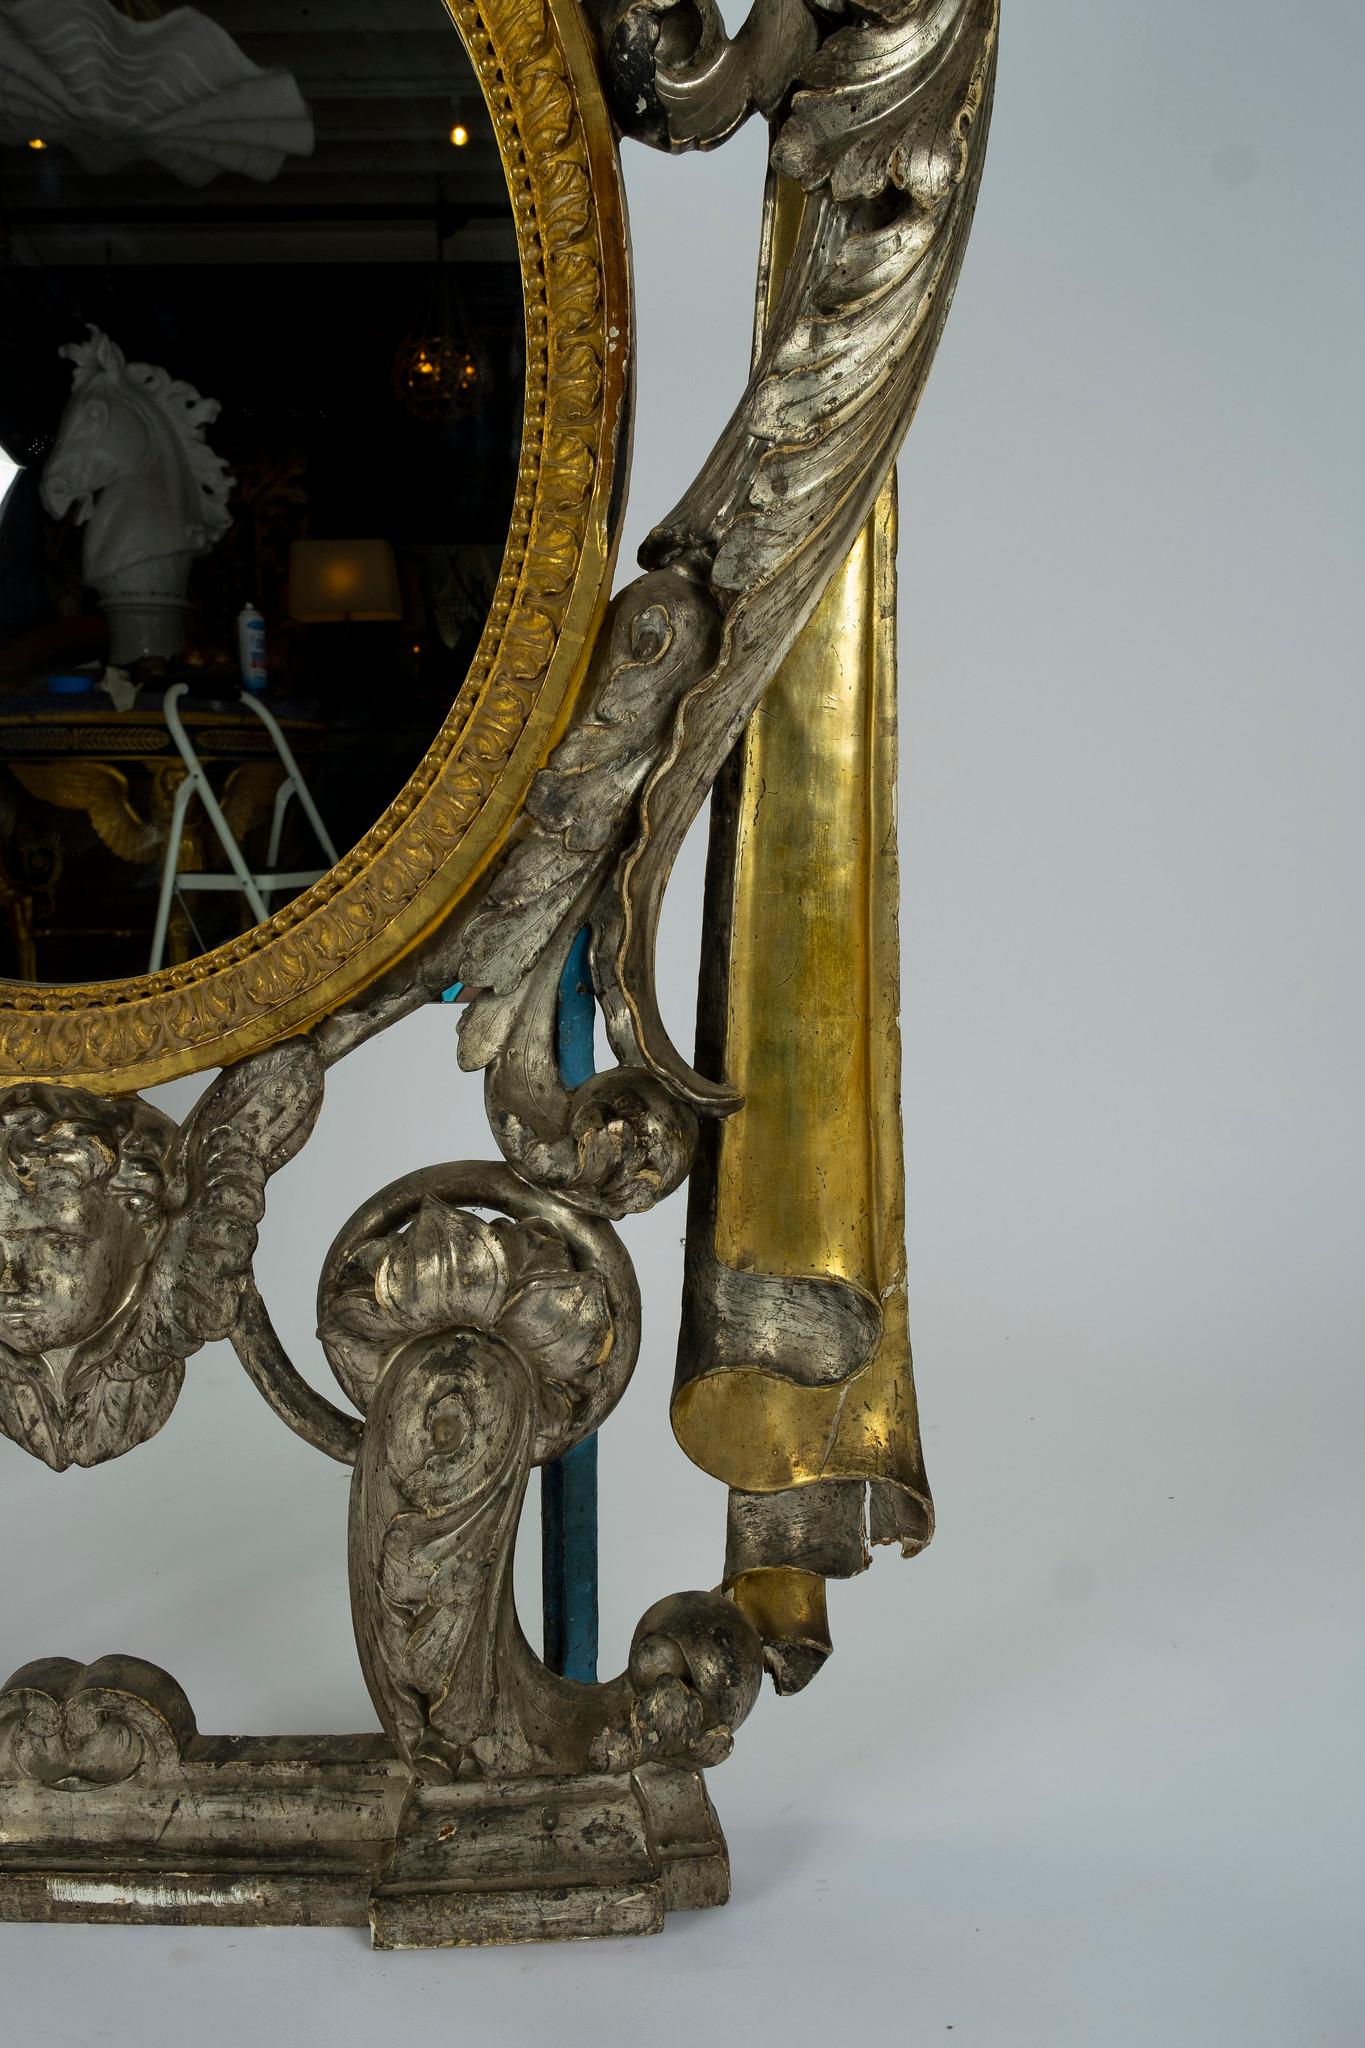 Un superbe miroir de la Renaissance française. Cette période a été le mouvement culturel et artistique en France et est clairement représentée dans les détails sculptés à la main de draperies, d'acanthes en volutes avec un ange religieux et des